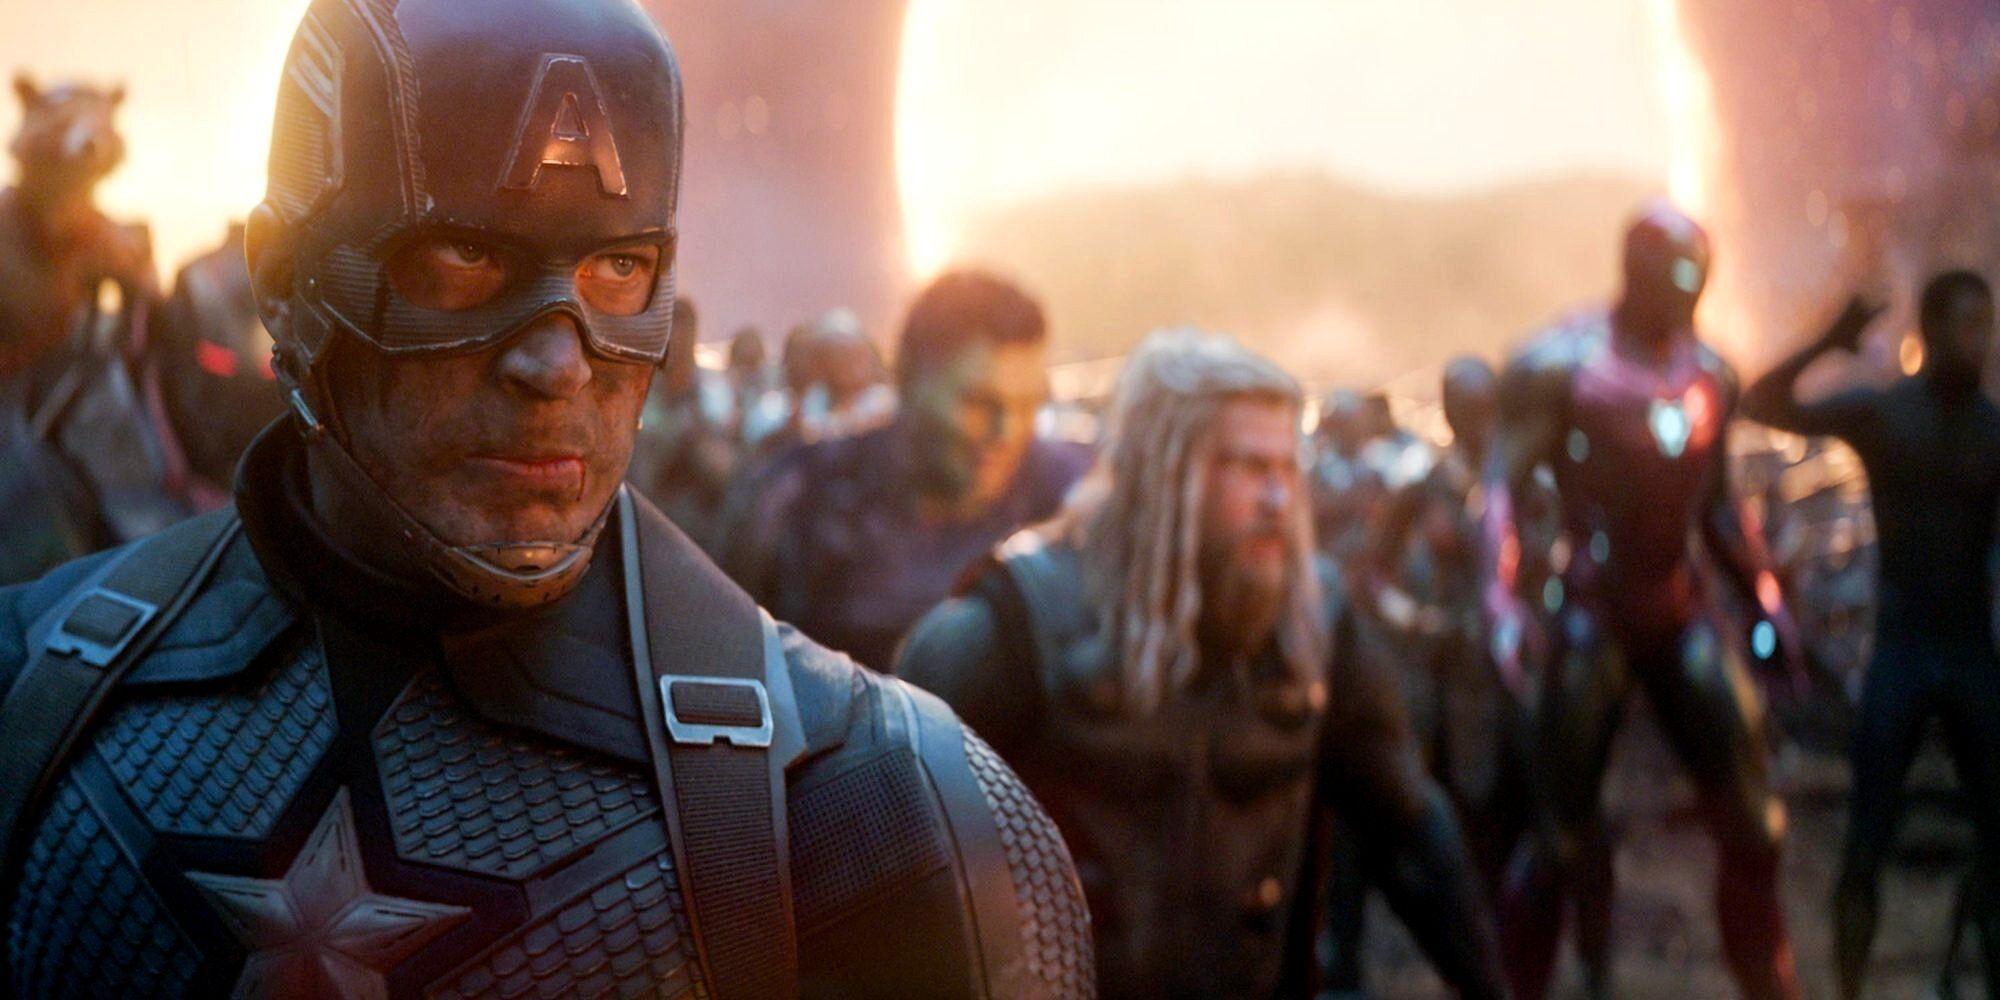 Captain America assembles the Avengers in 'Avengers: Endgame'